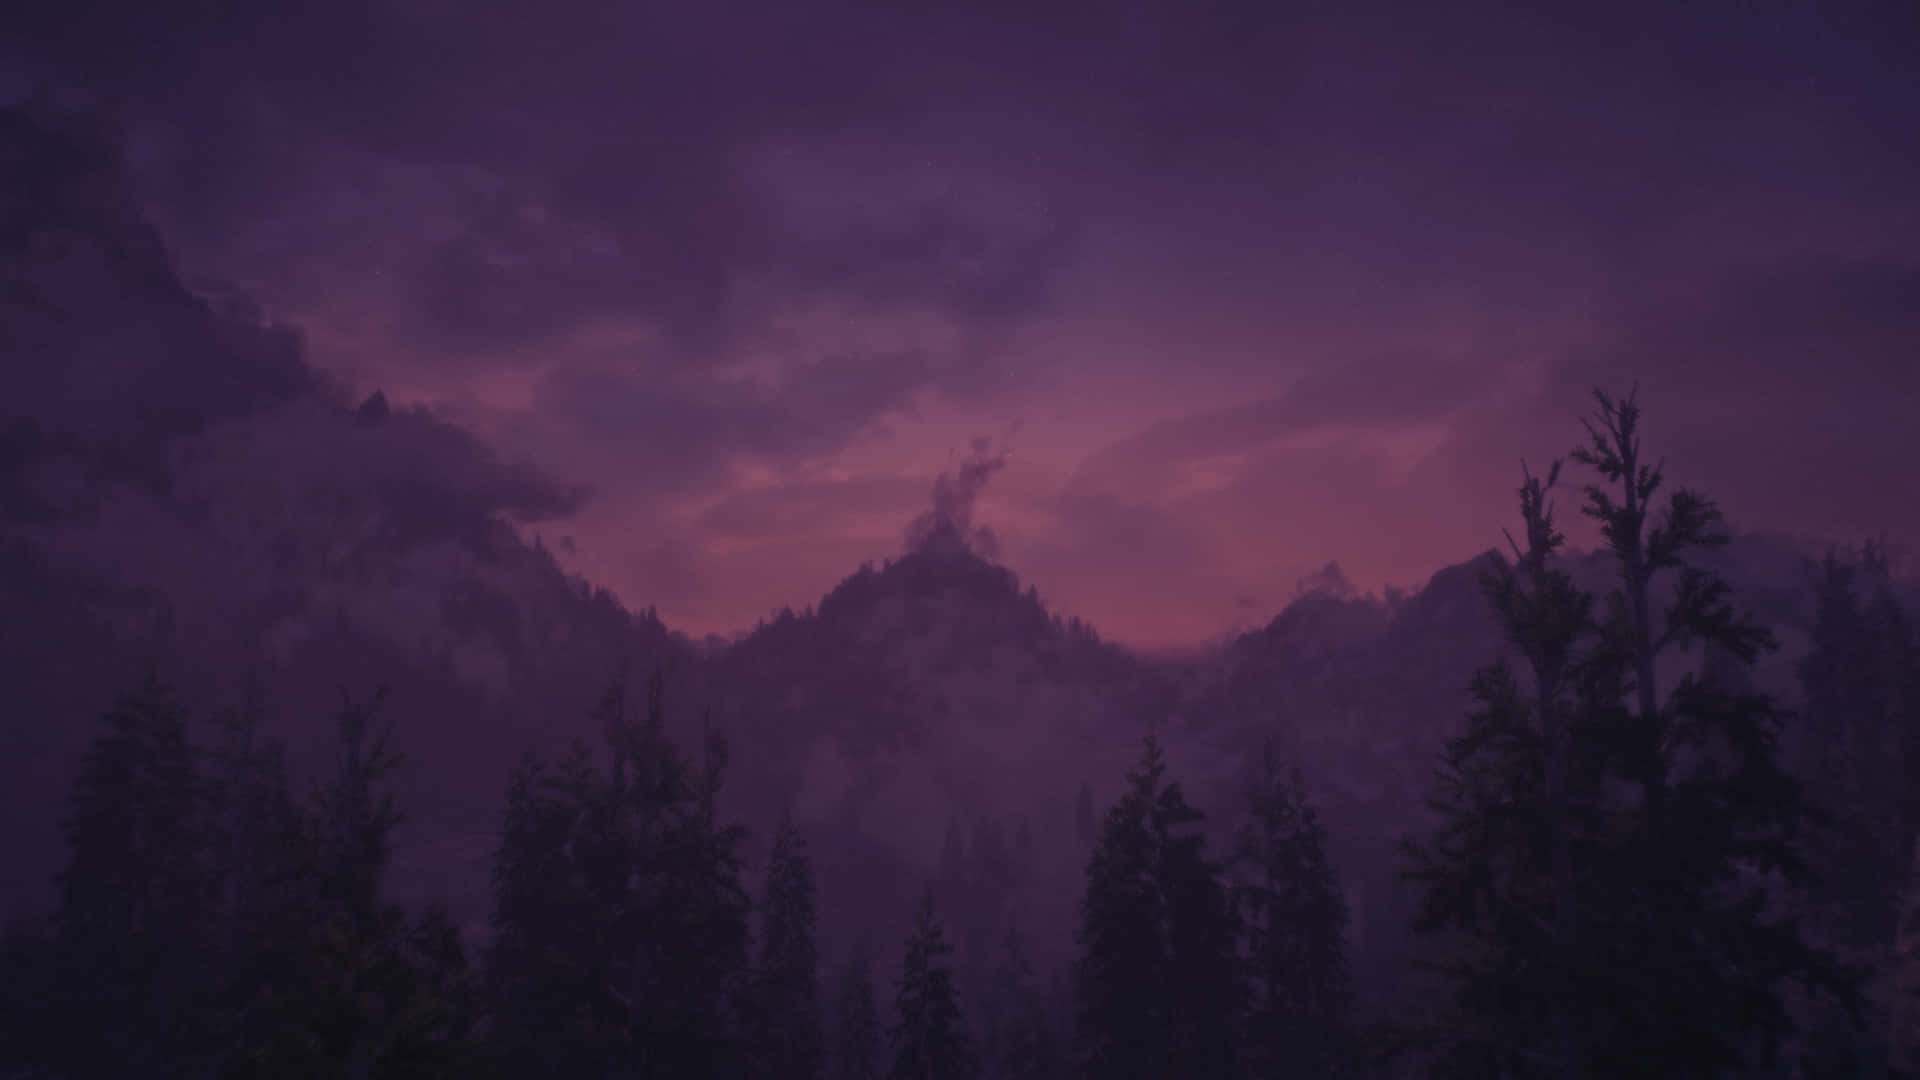 Árbolesdel Bosque En Tierra Neblinosa Paisaje De Skyrim Fondo de pantalla